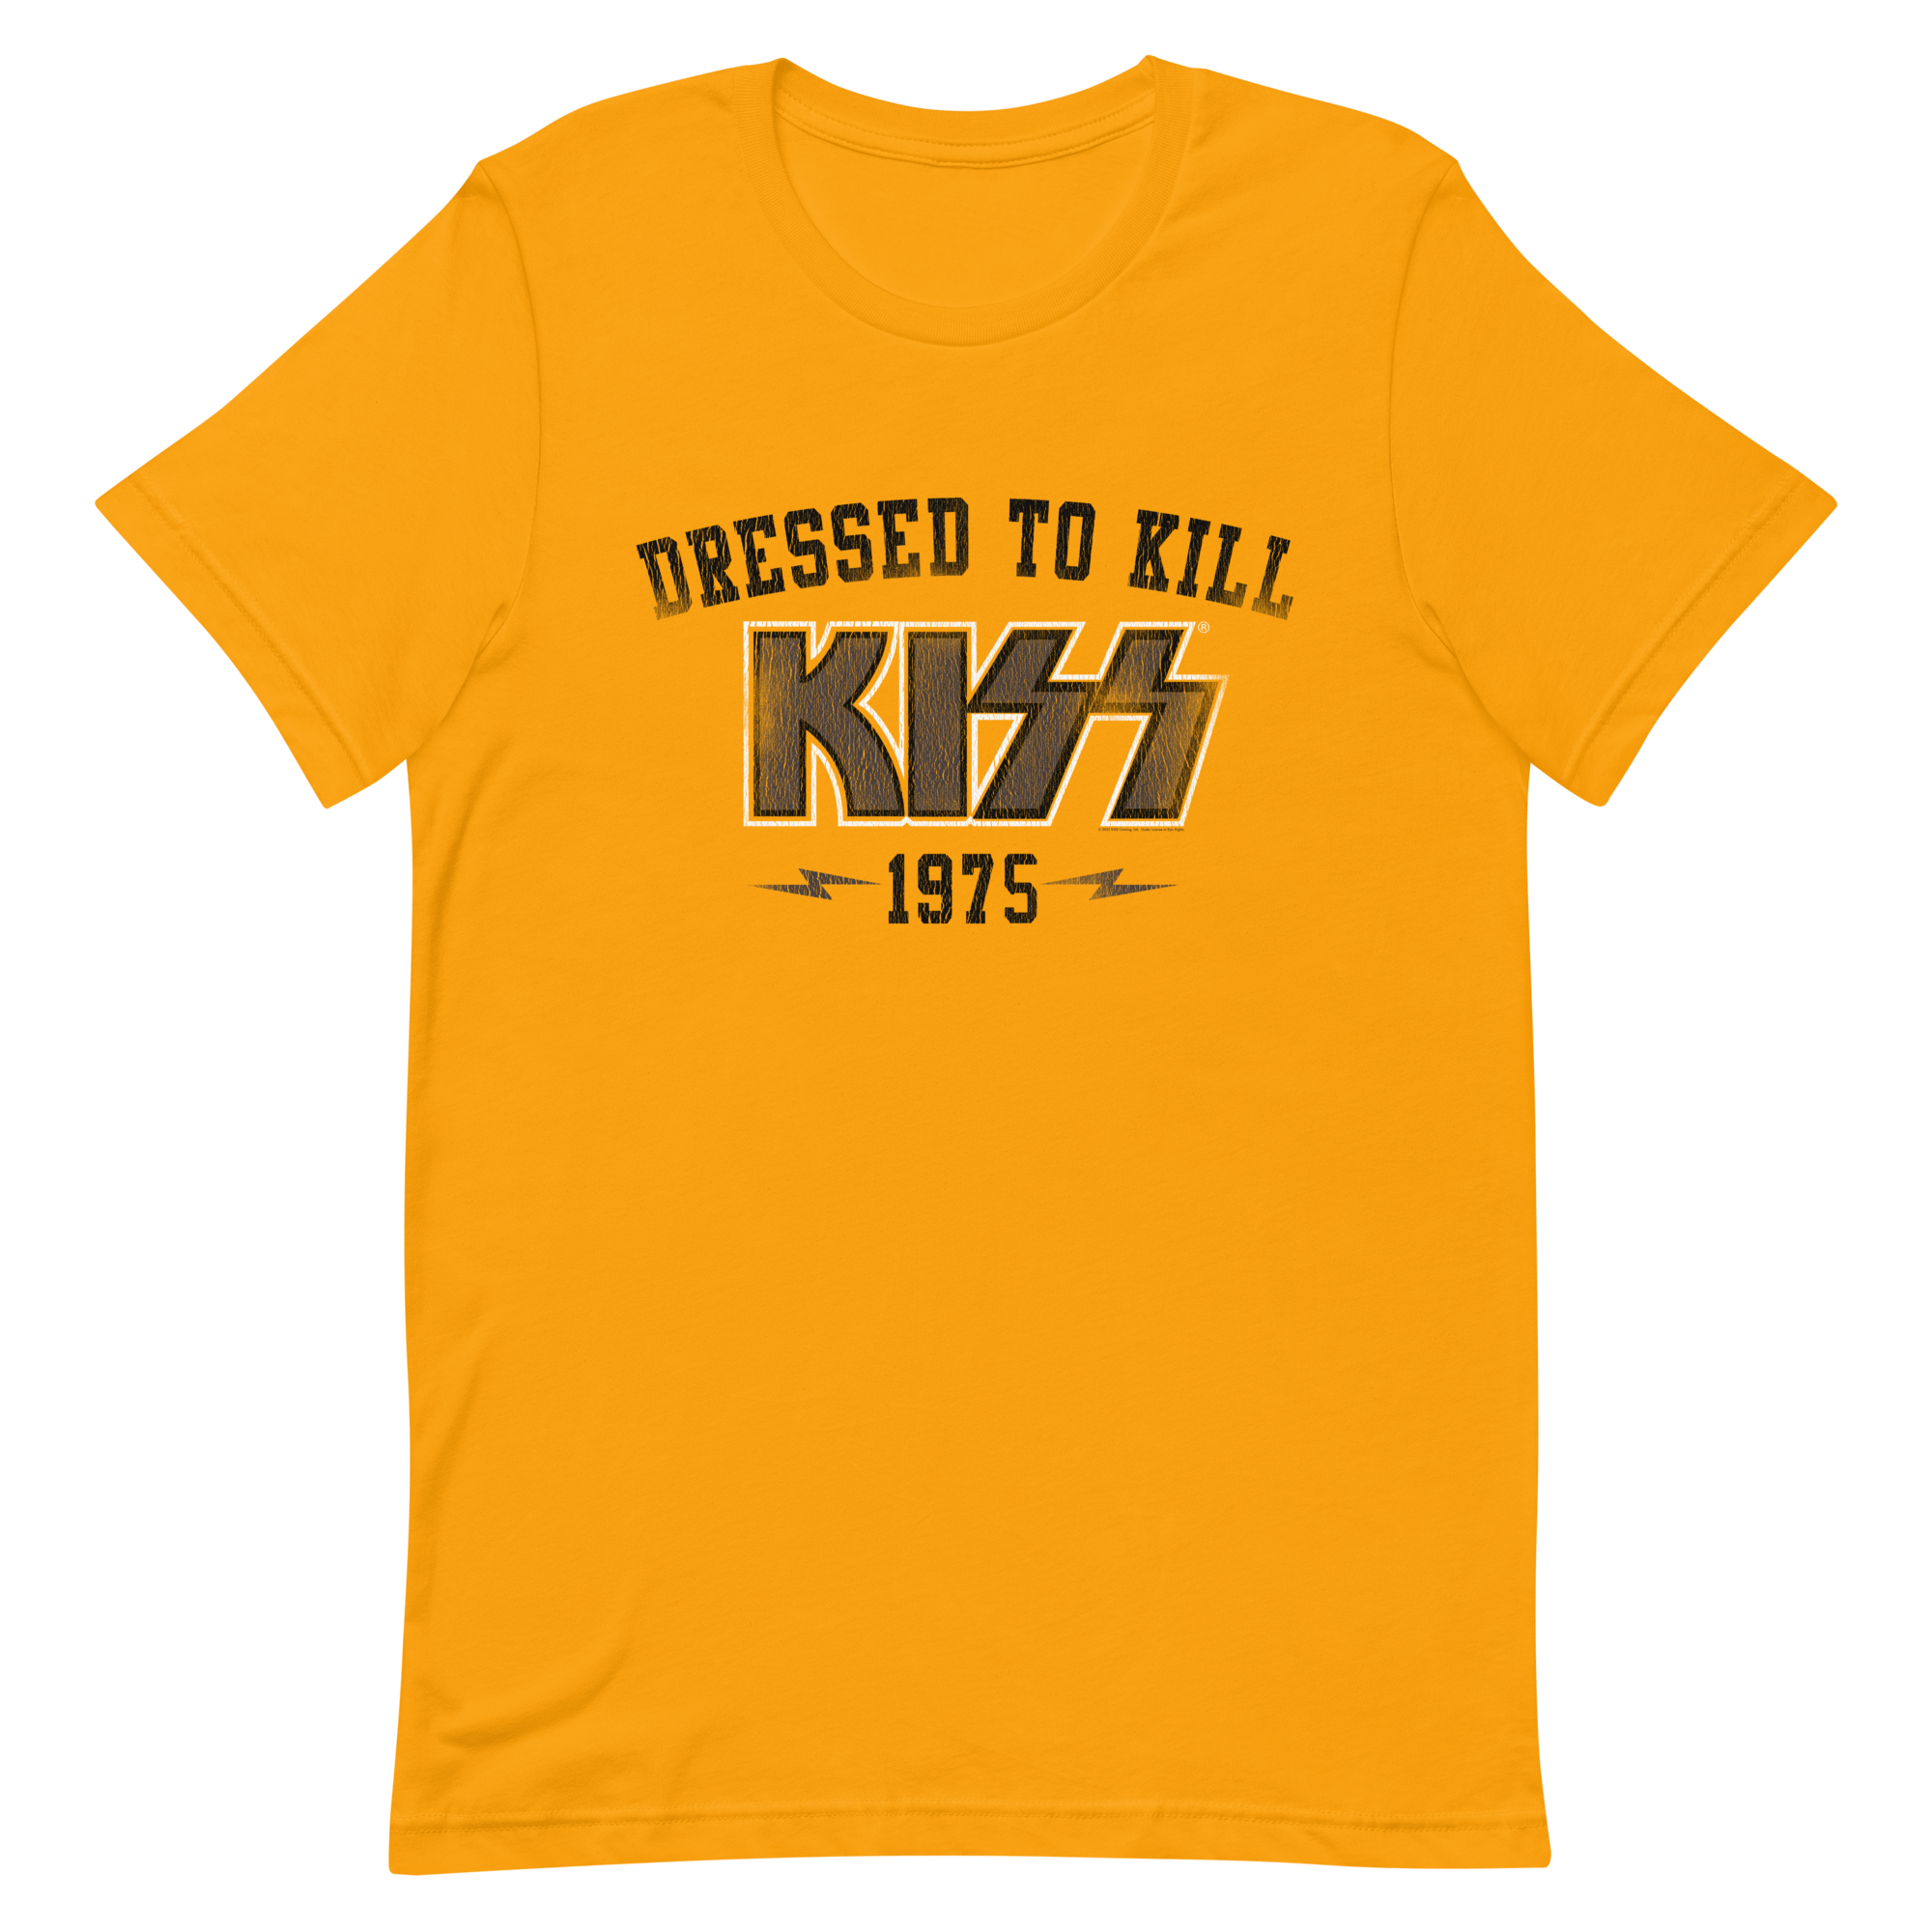 Kiss - Dressed To Kill '75 T-Shirt Gold